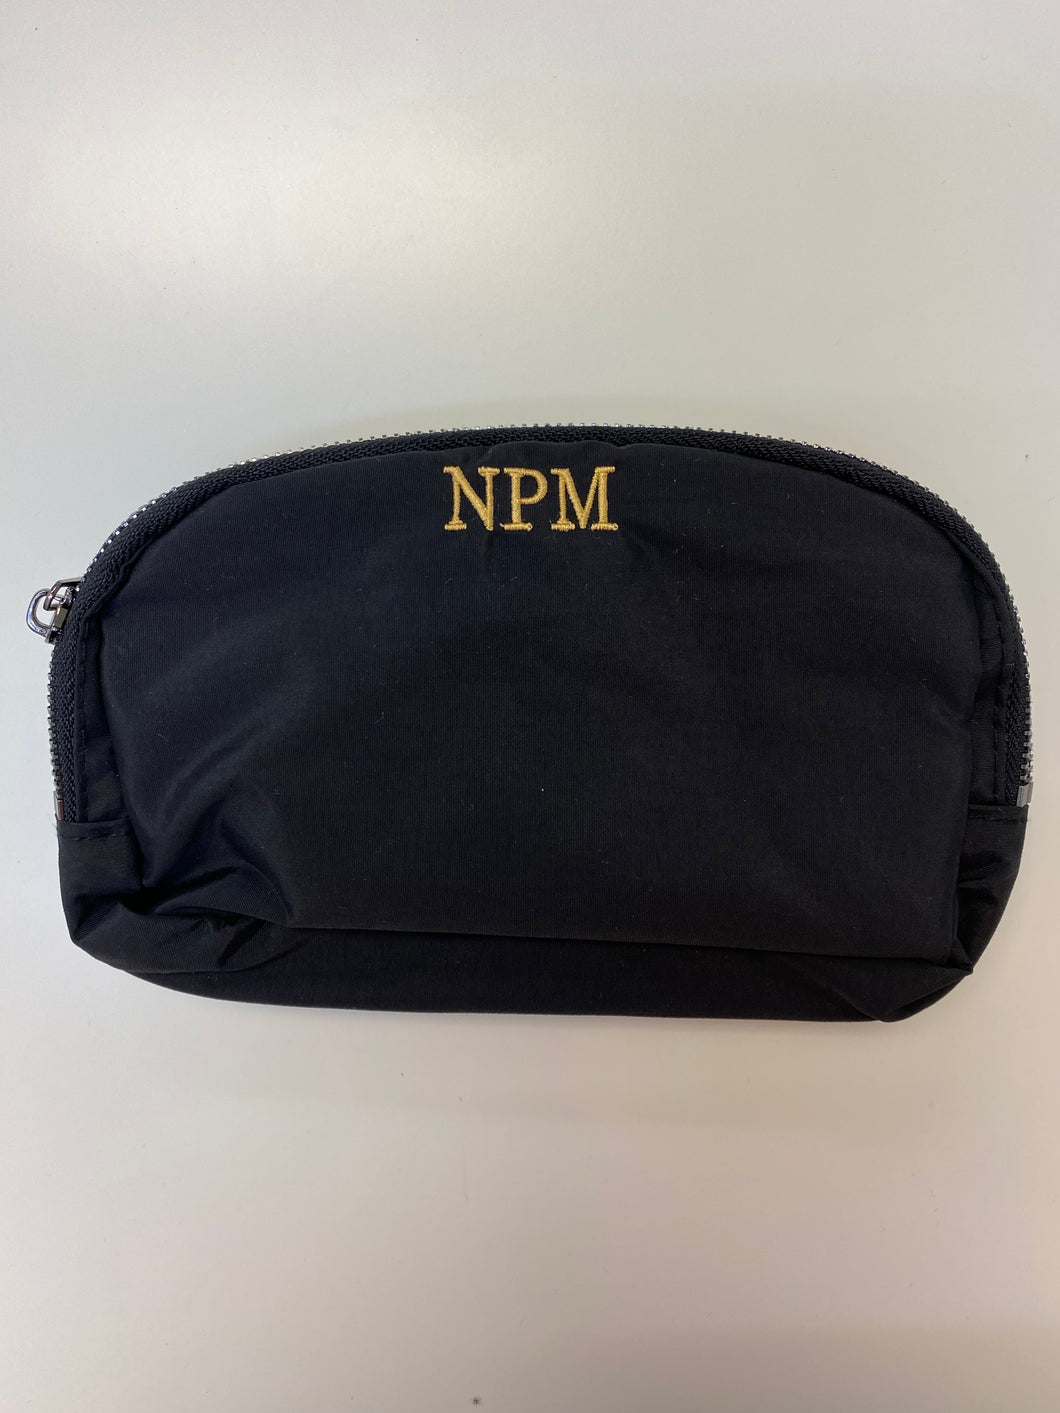 NPM Belt Bag- No Flaws